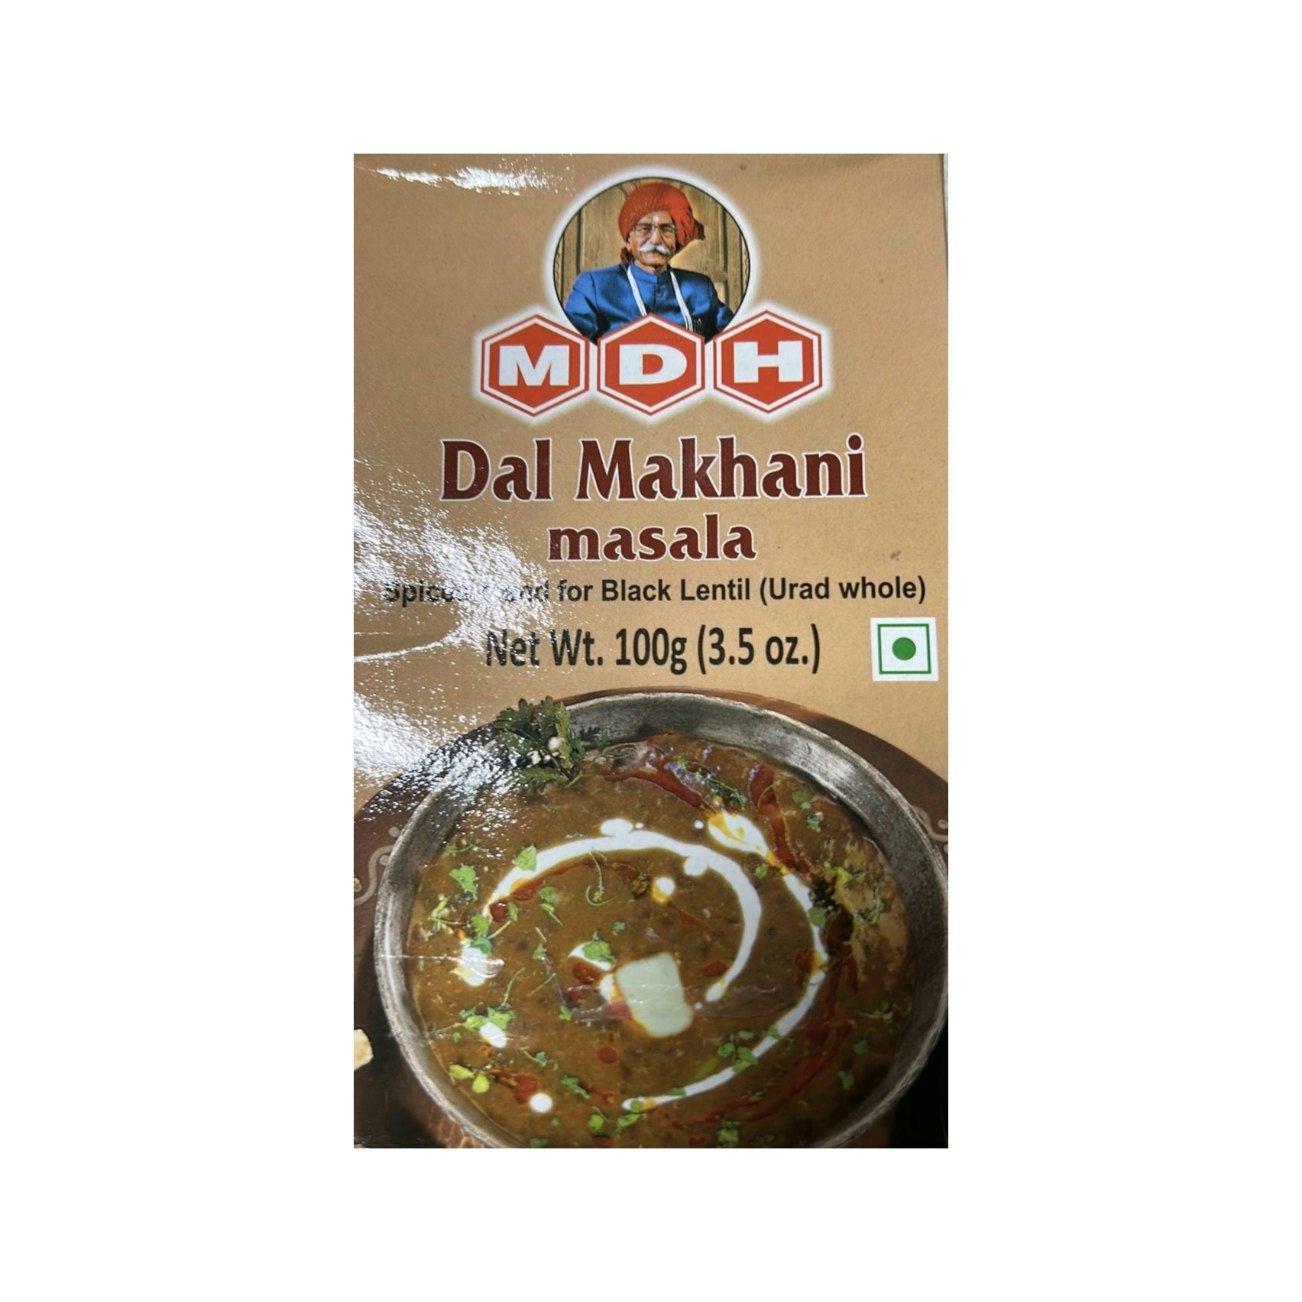 Dal Makhani Masala 100g (MDH)